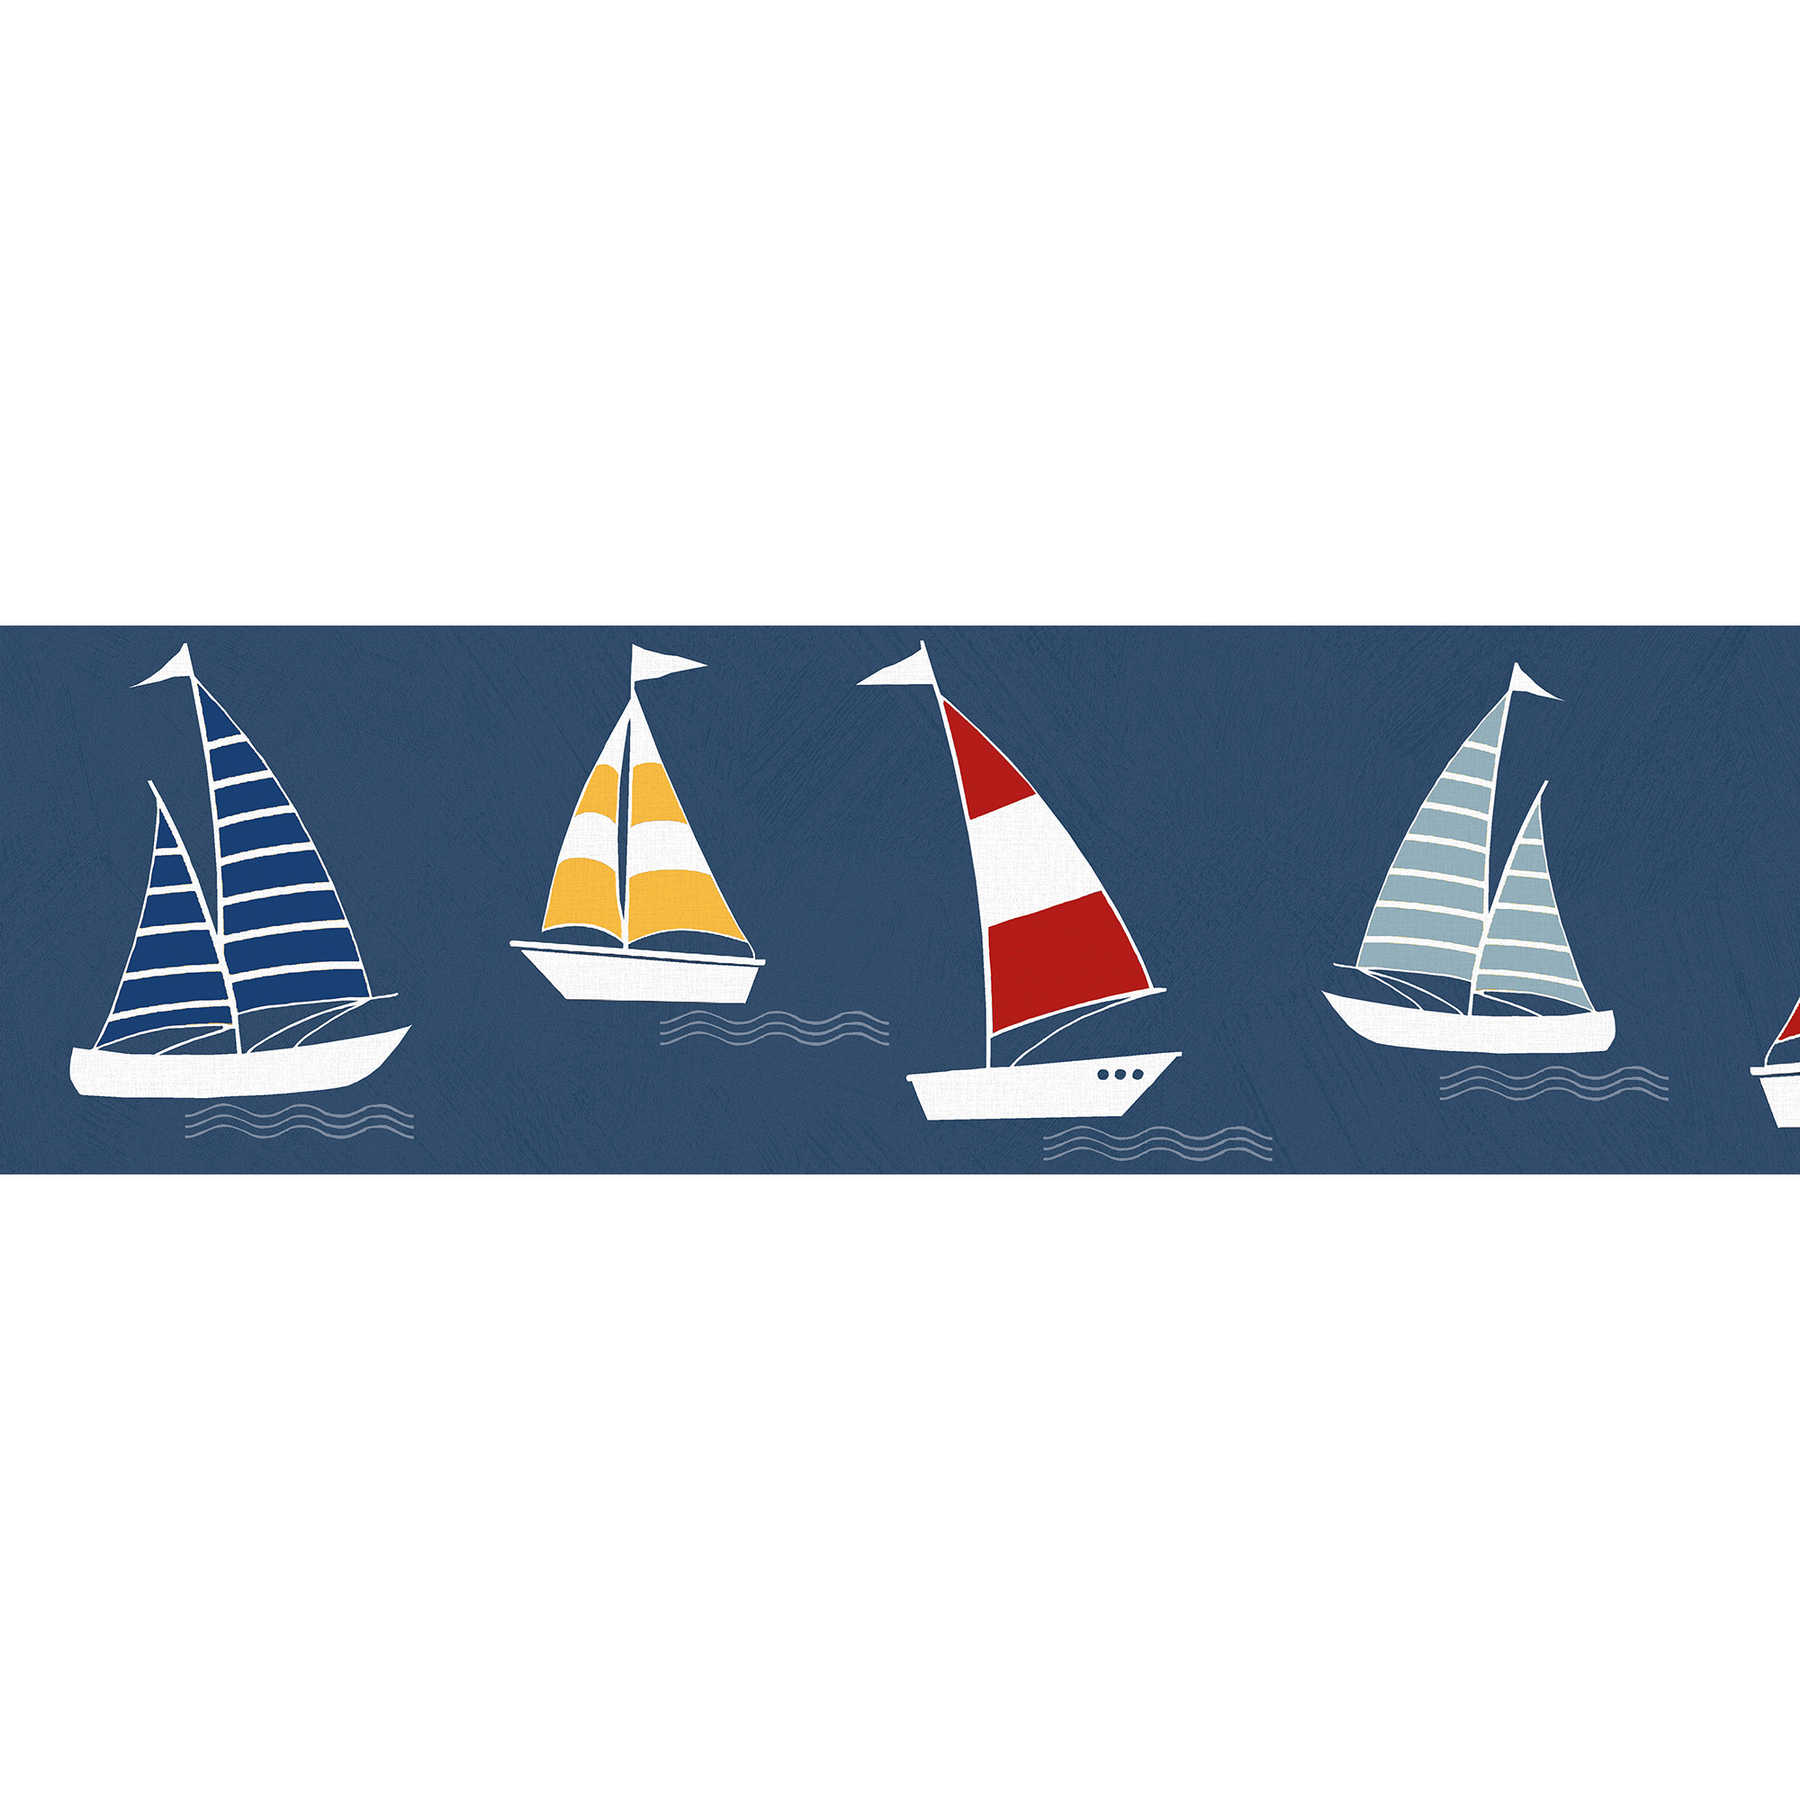         Kinder Bordüre "Segelboote" für Jungenzimmer – Blau, Rot, Gelb
    